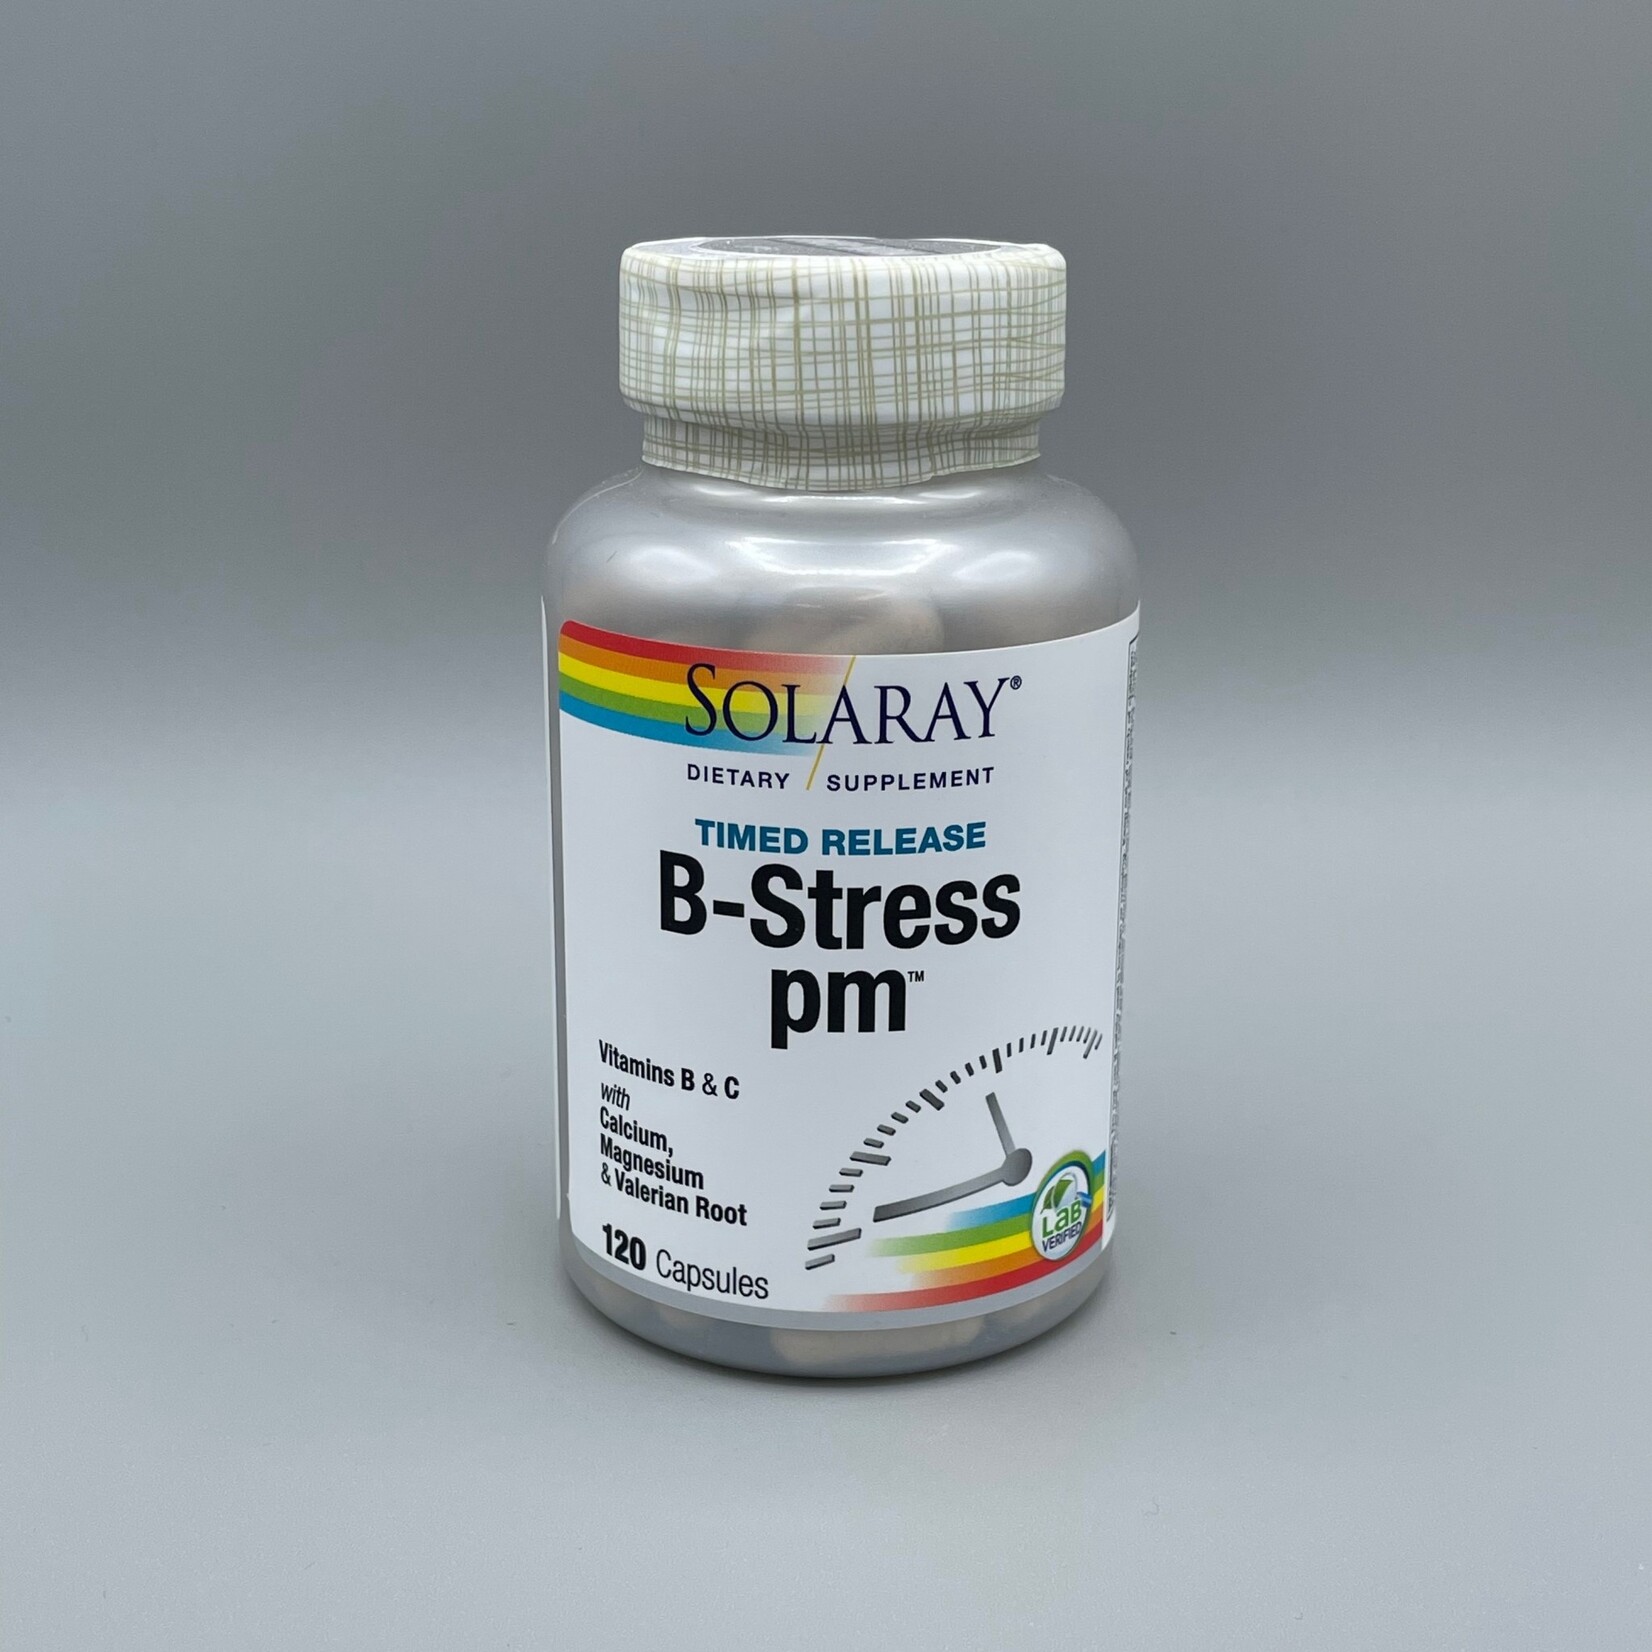 Solaray B-Stress pm (Vitamins B & C w/ Calcium, Magnesium & Valerian Root, Timed Release), 120 Capsules